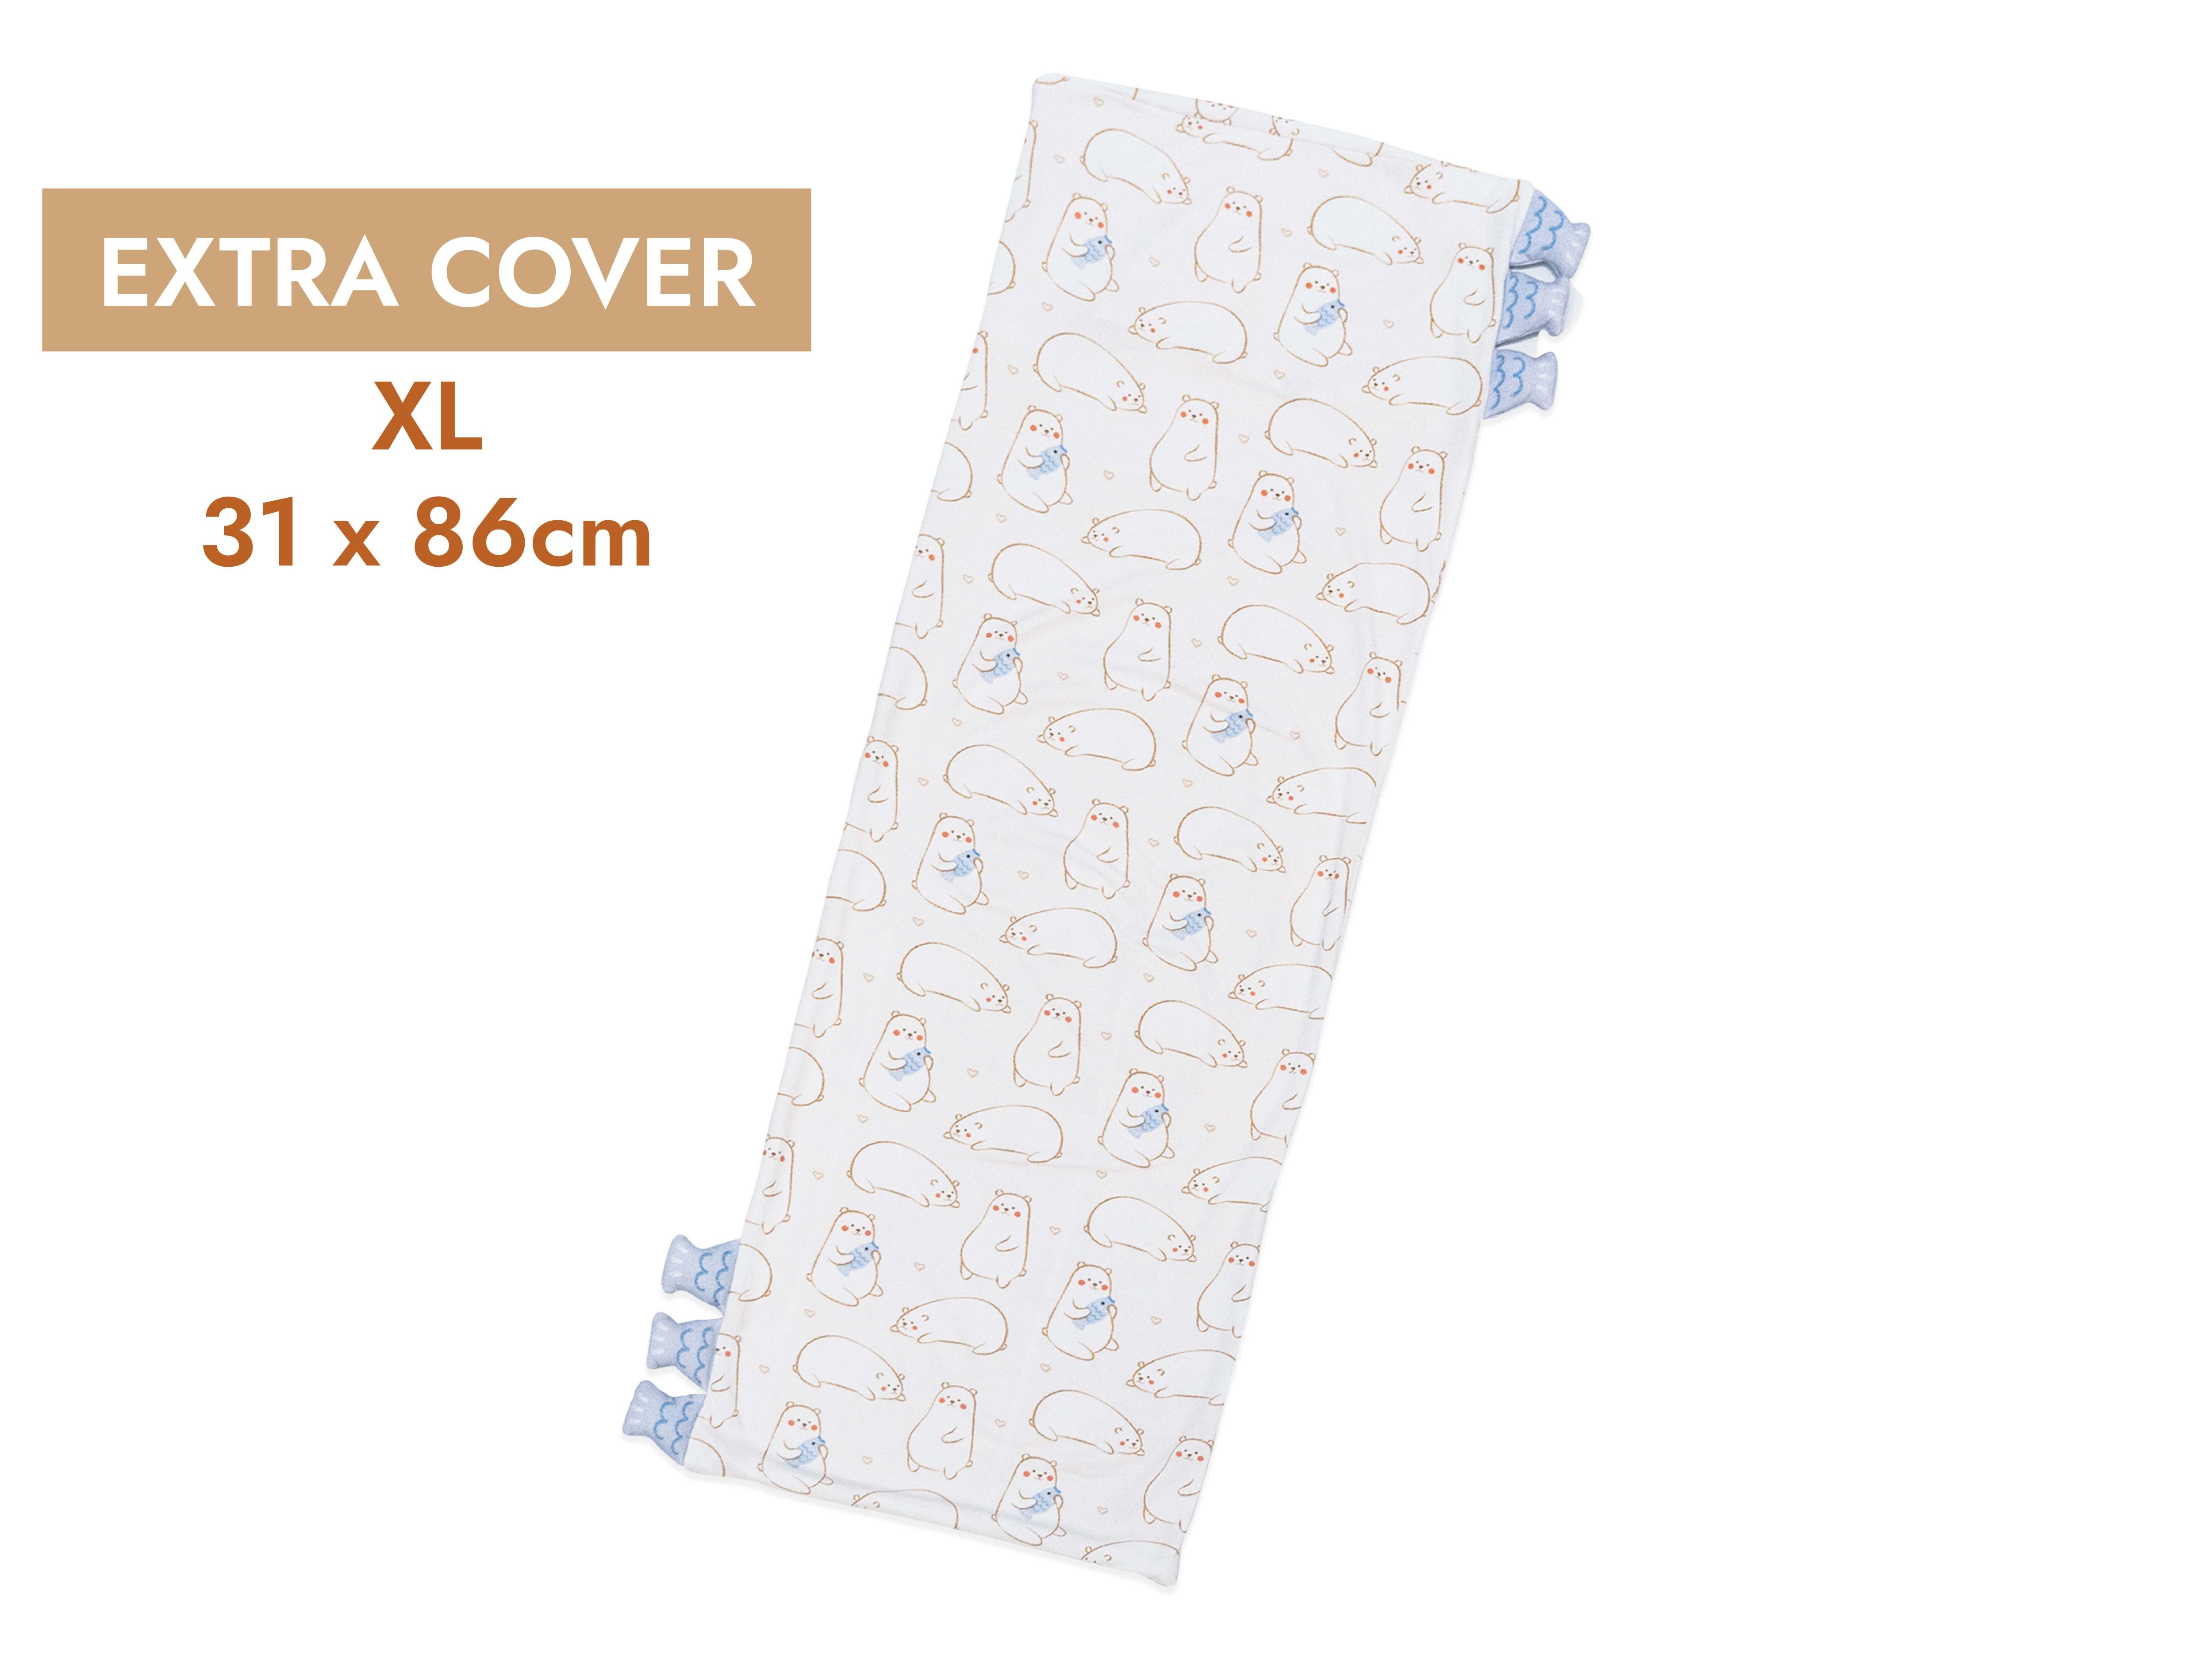 cho xl pillow extra cover maru bear design